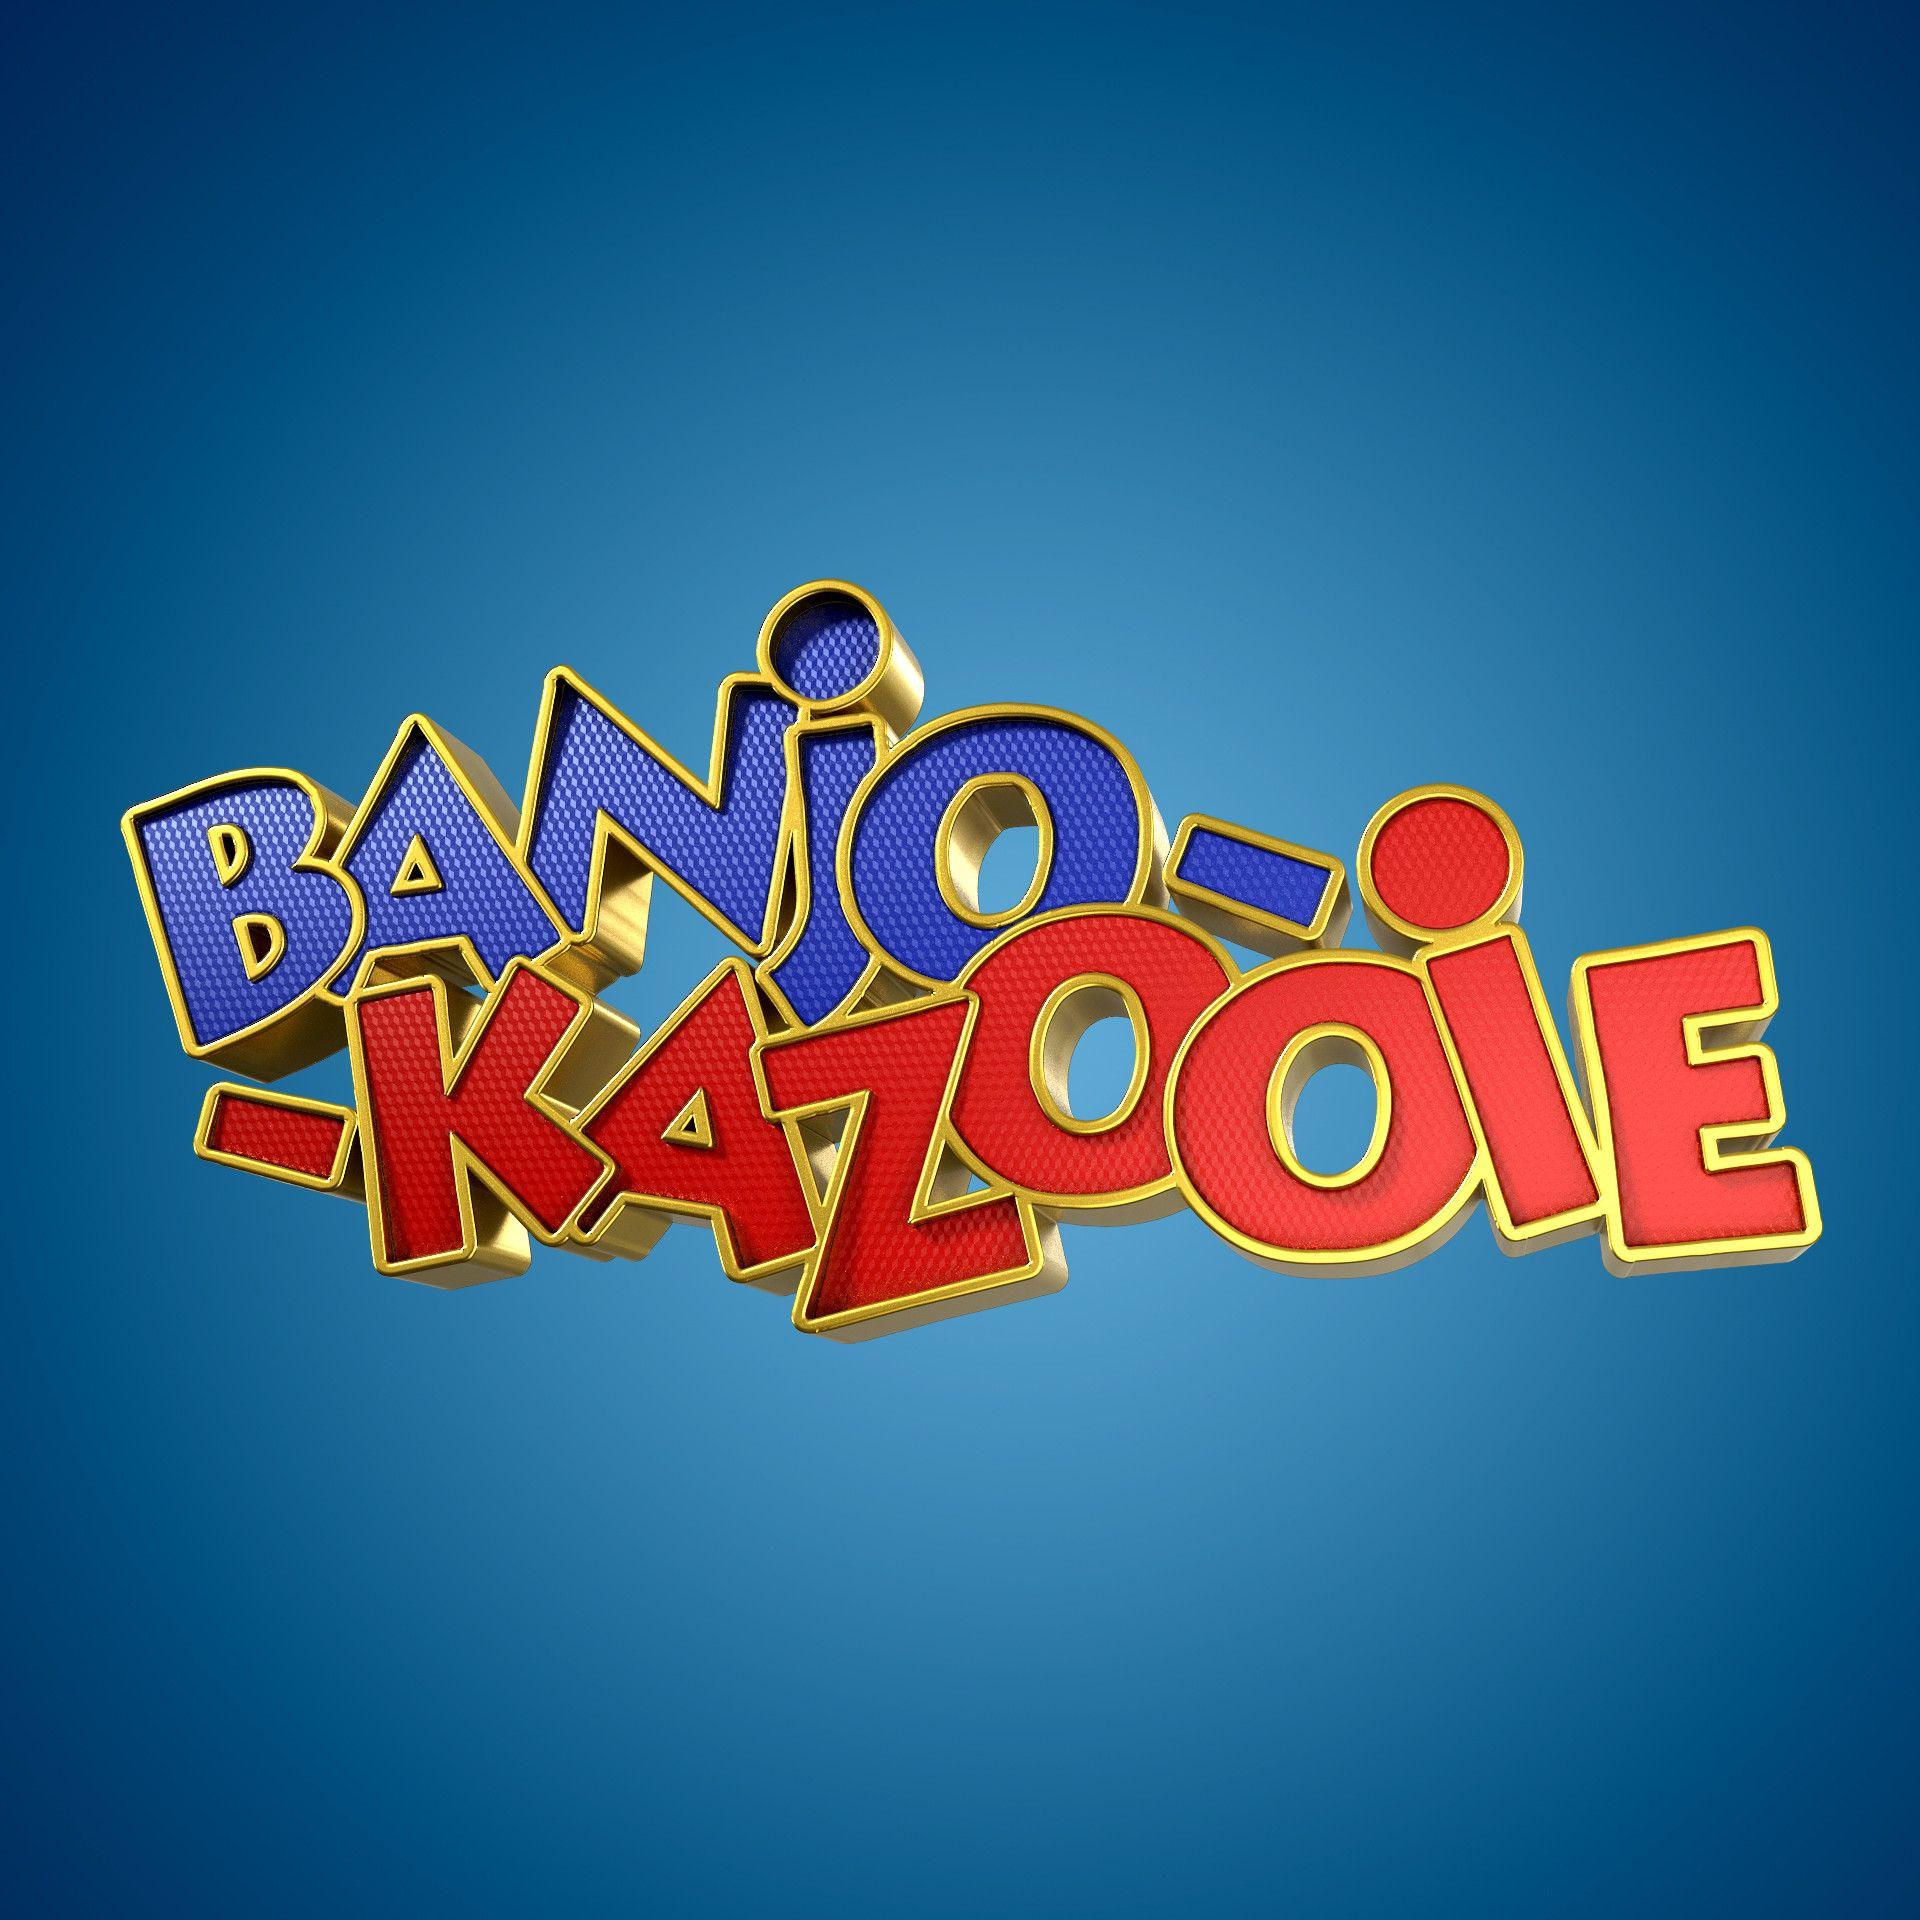 Banjo-Kazooie Logo - Banjo Kazooie 3D Fan Art, Michael Santin